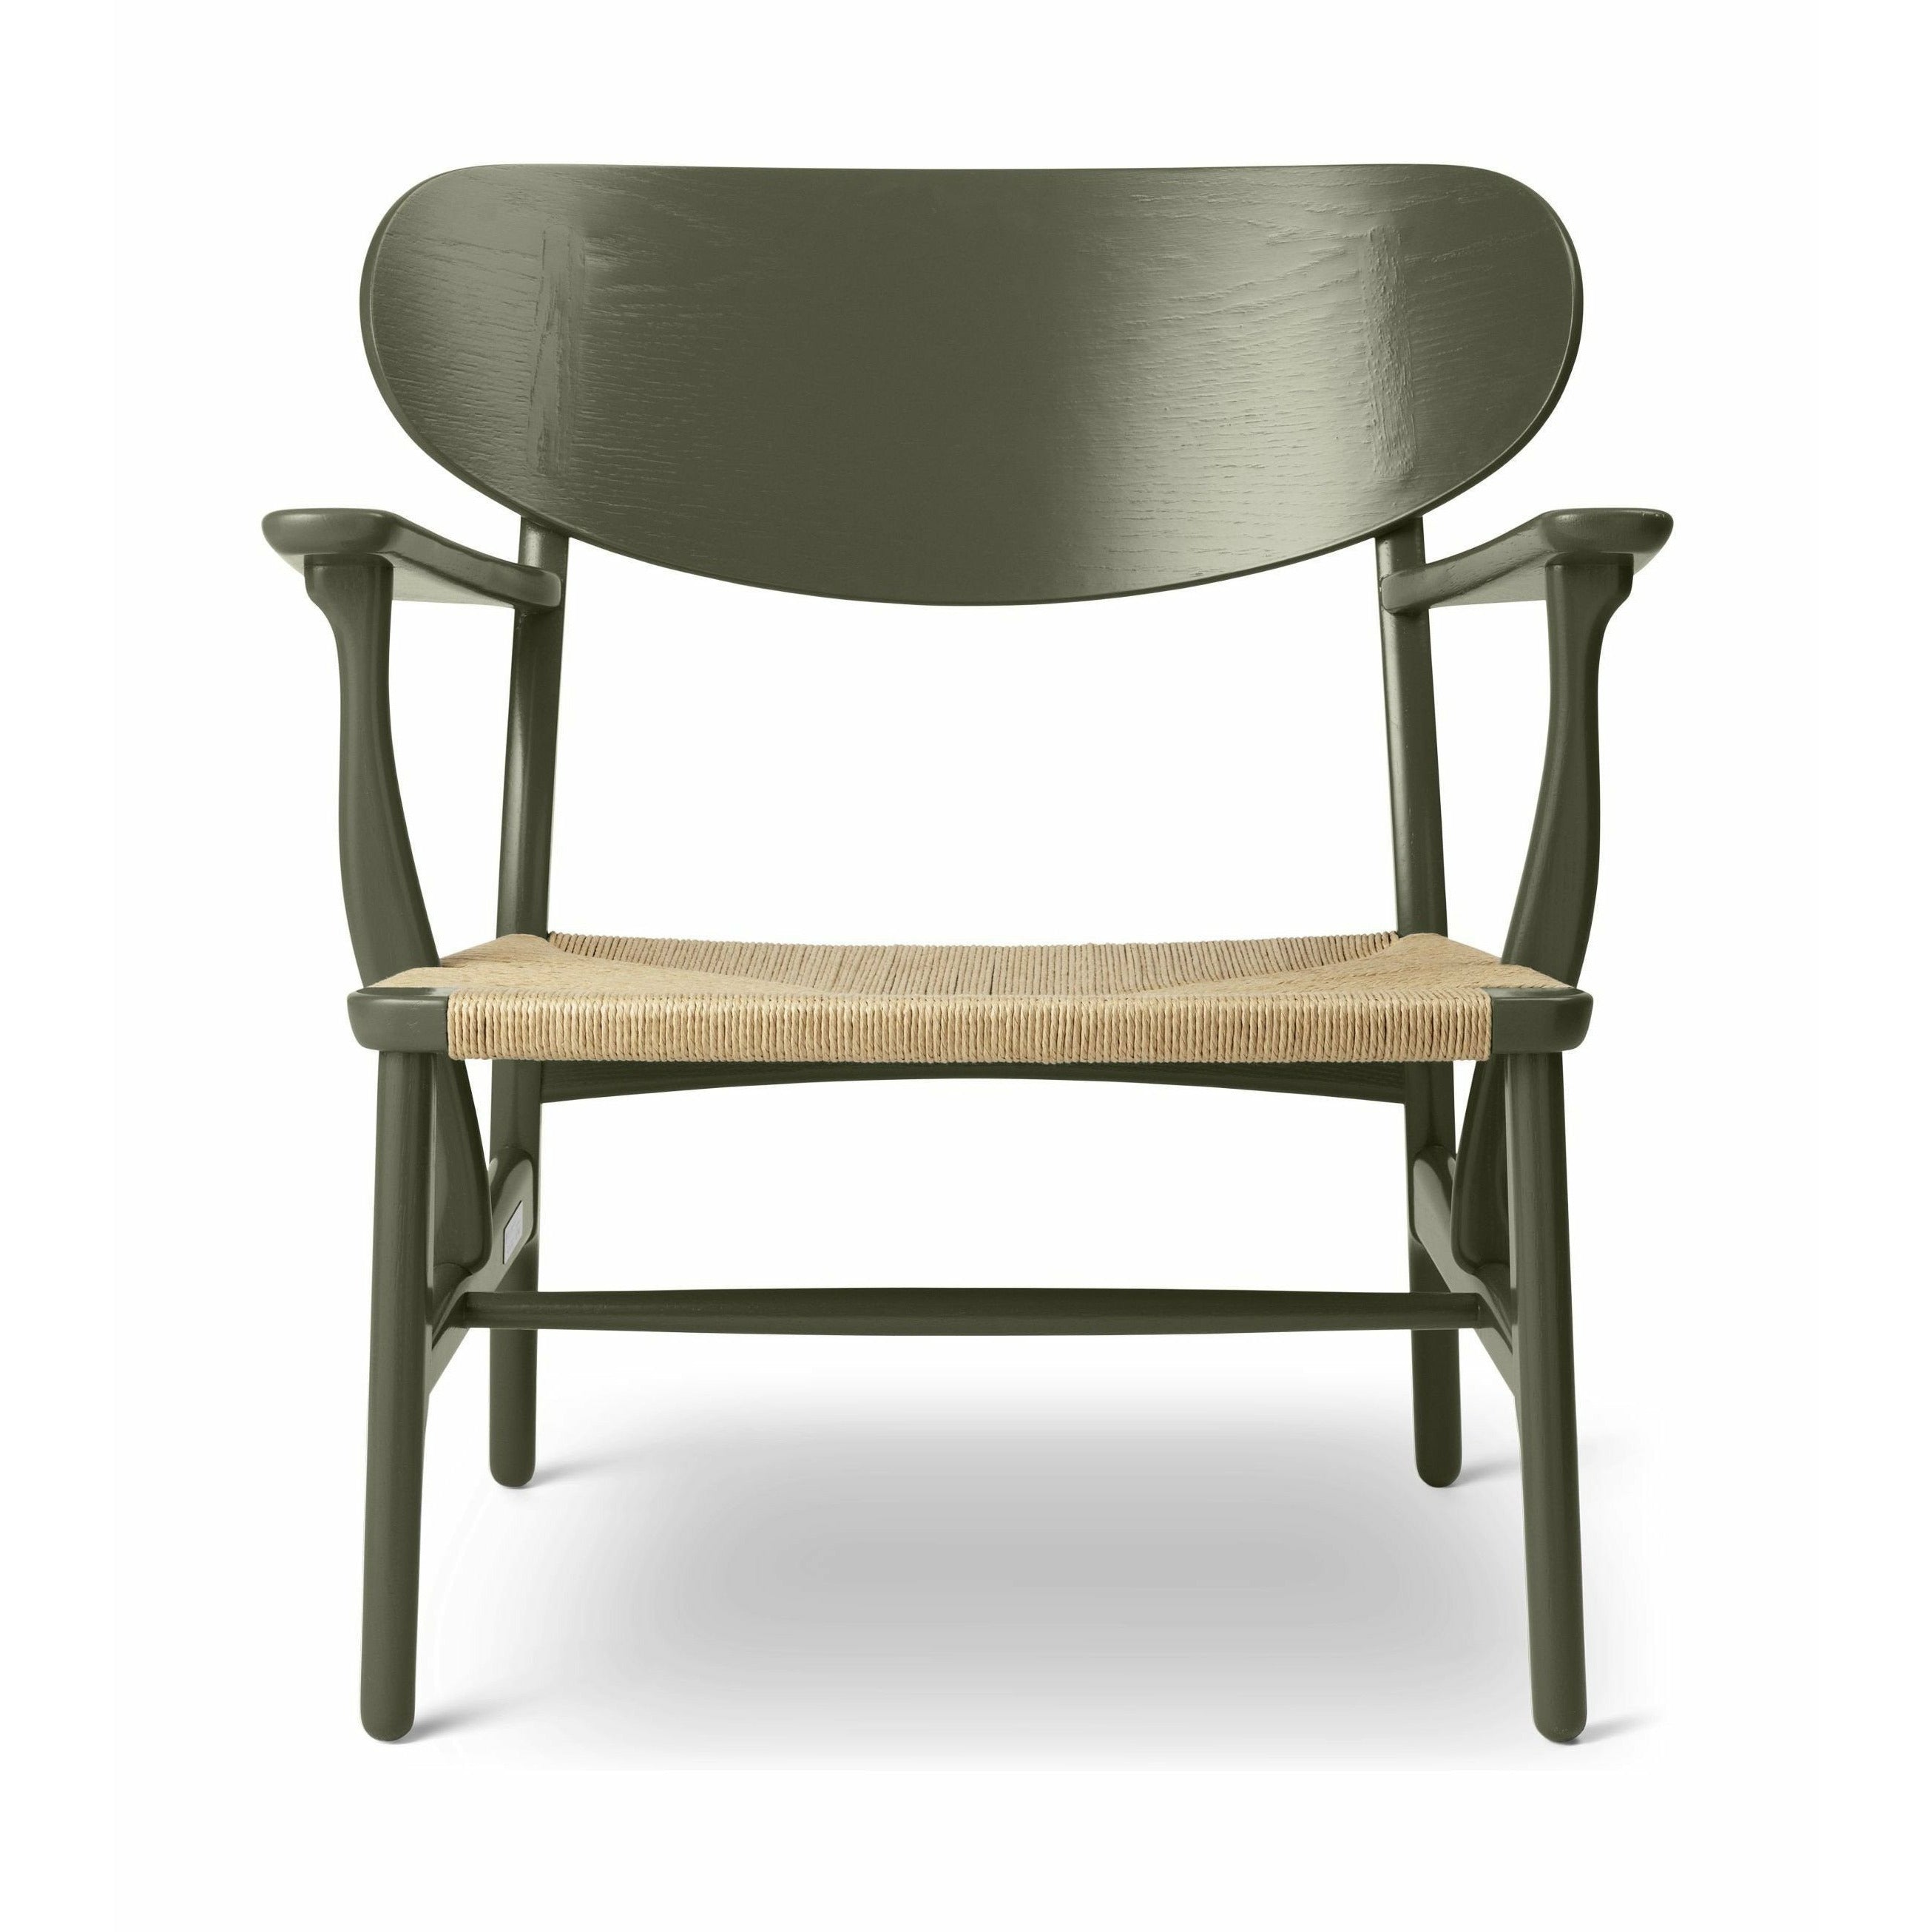 Carl Hansen Ch22 Lounge Chair Oak, Seaweed Green/Natural Cord